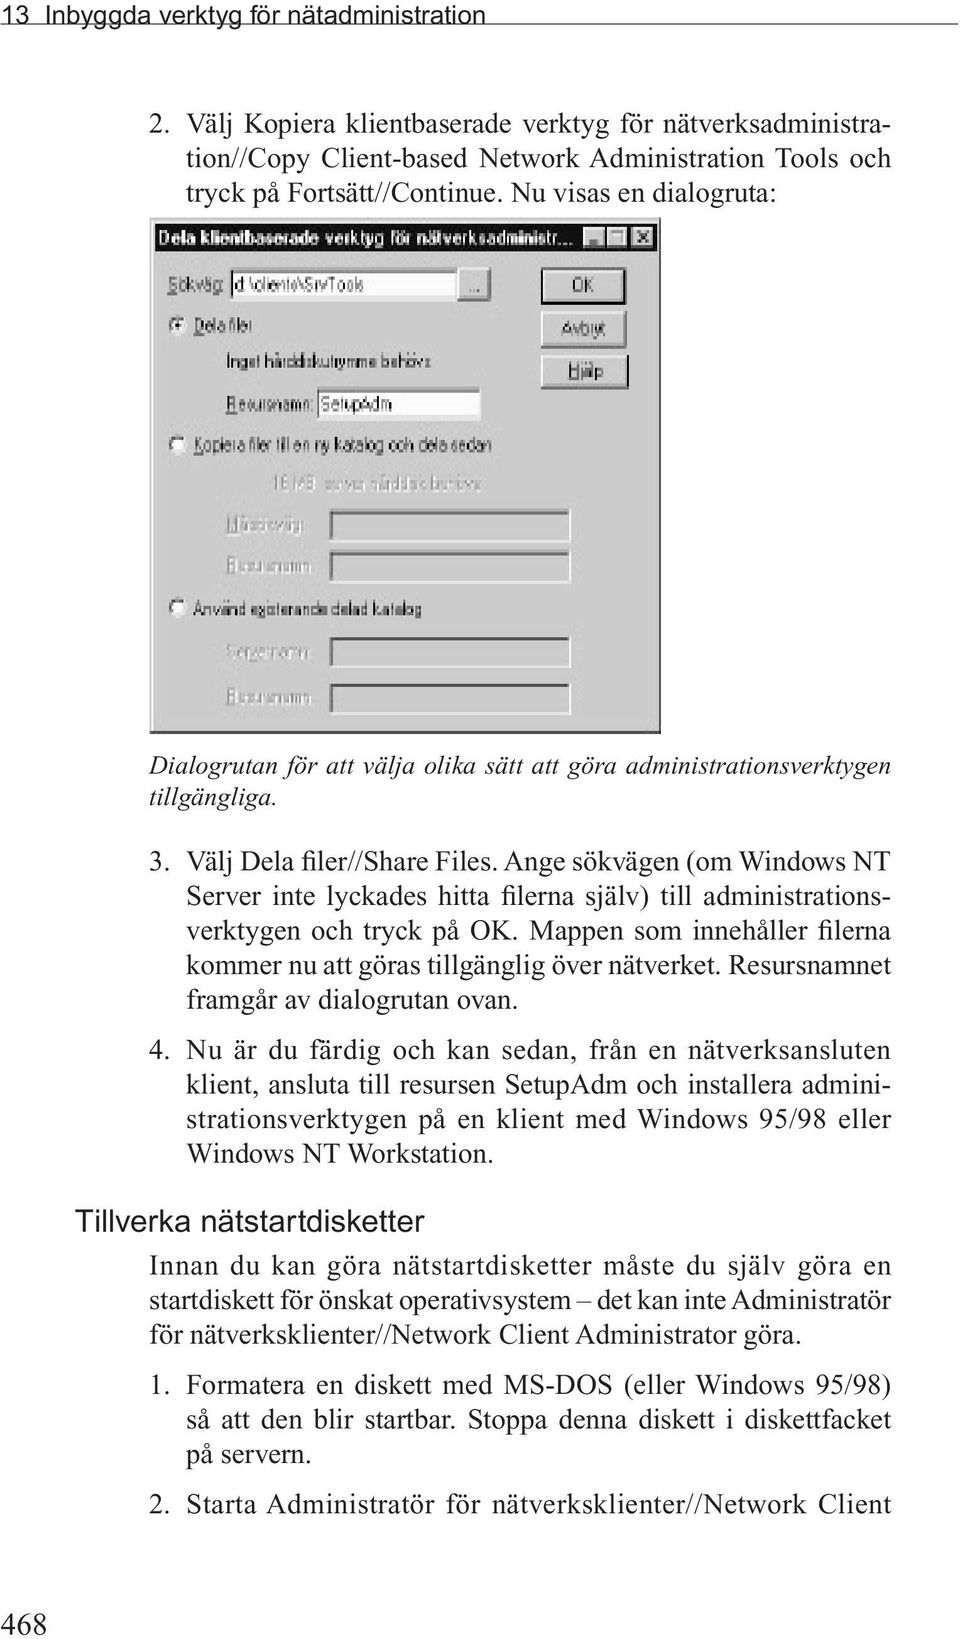 Ange sökvägen (om Windows NT Server inte lyckades hitta filerna själv) till administrationsverktygen och tryck på OK. Mappen som innehåller filerna kommer nu att göras tillgänglig över nätverket.